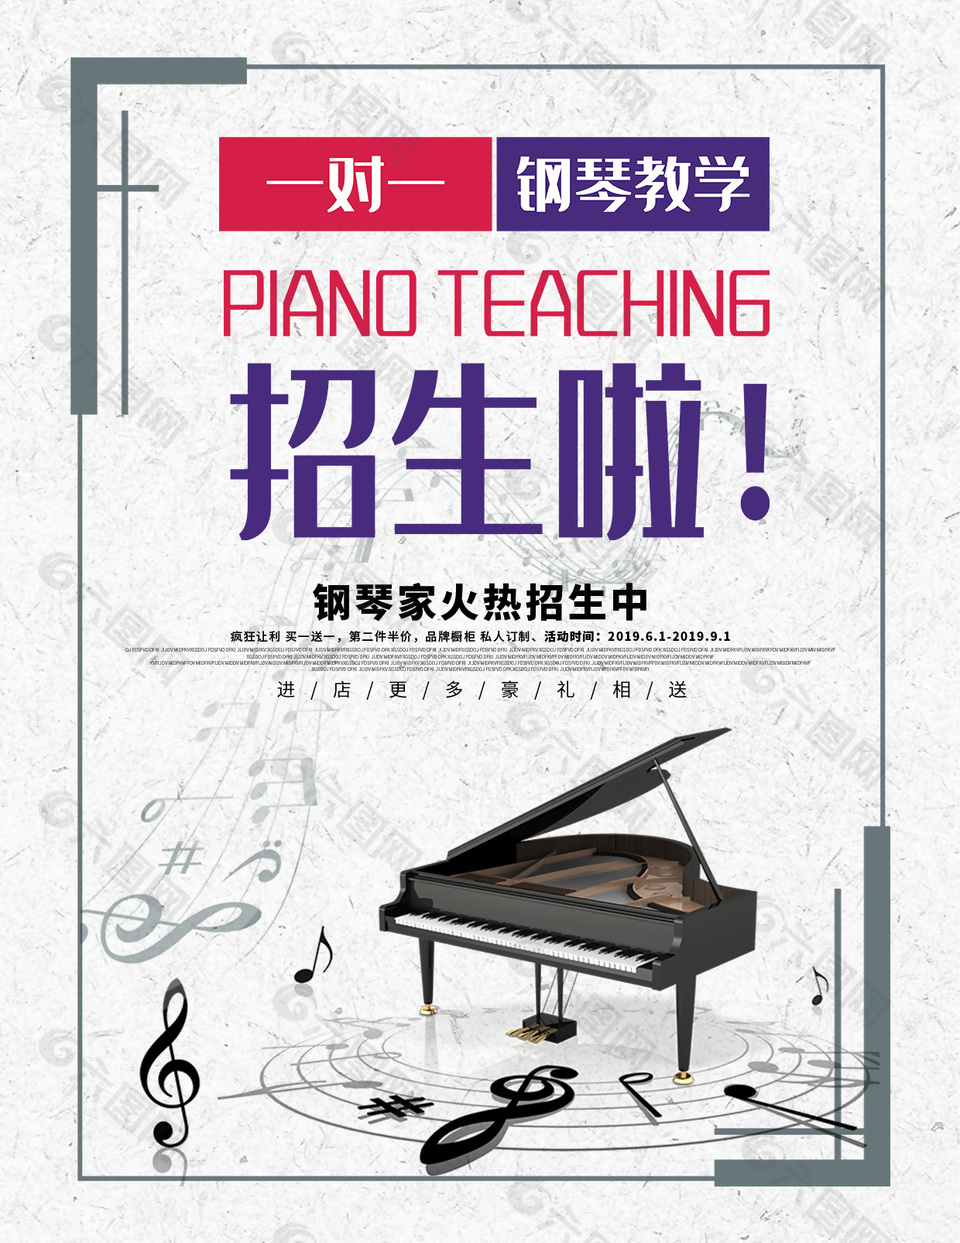 钢琴培训音乐班招生